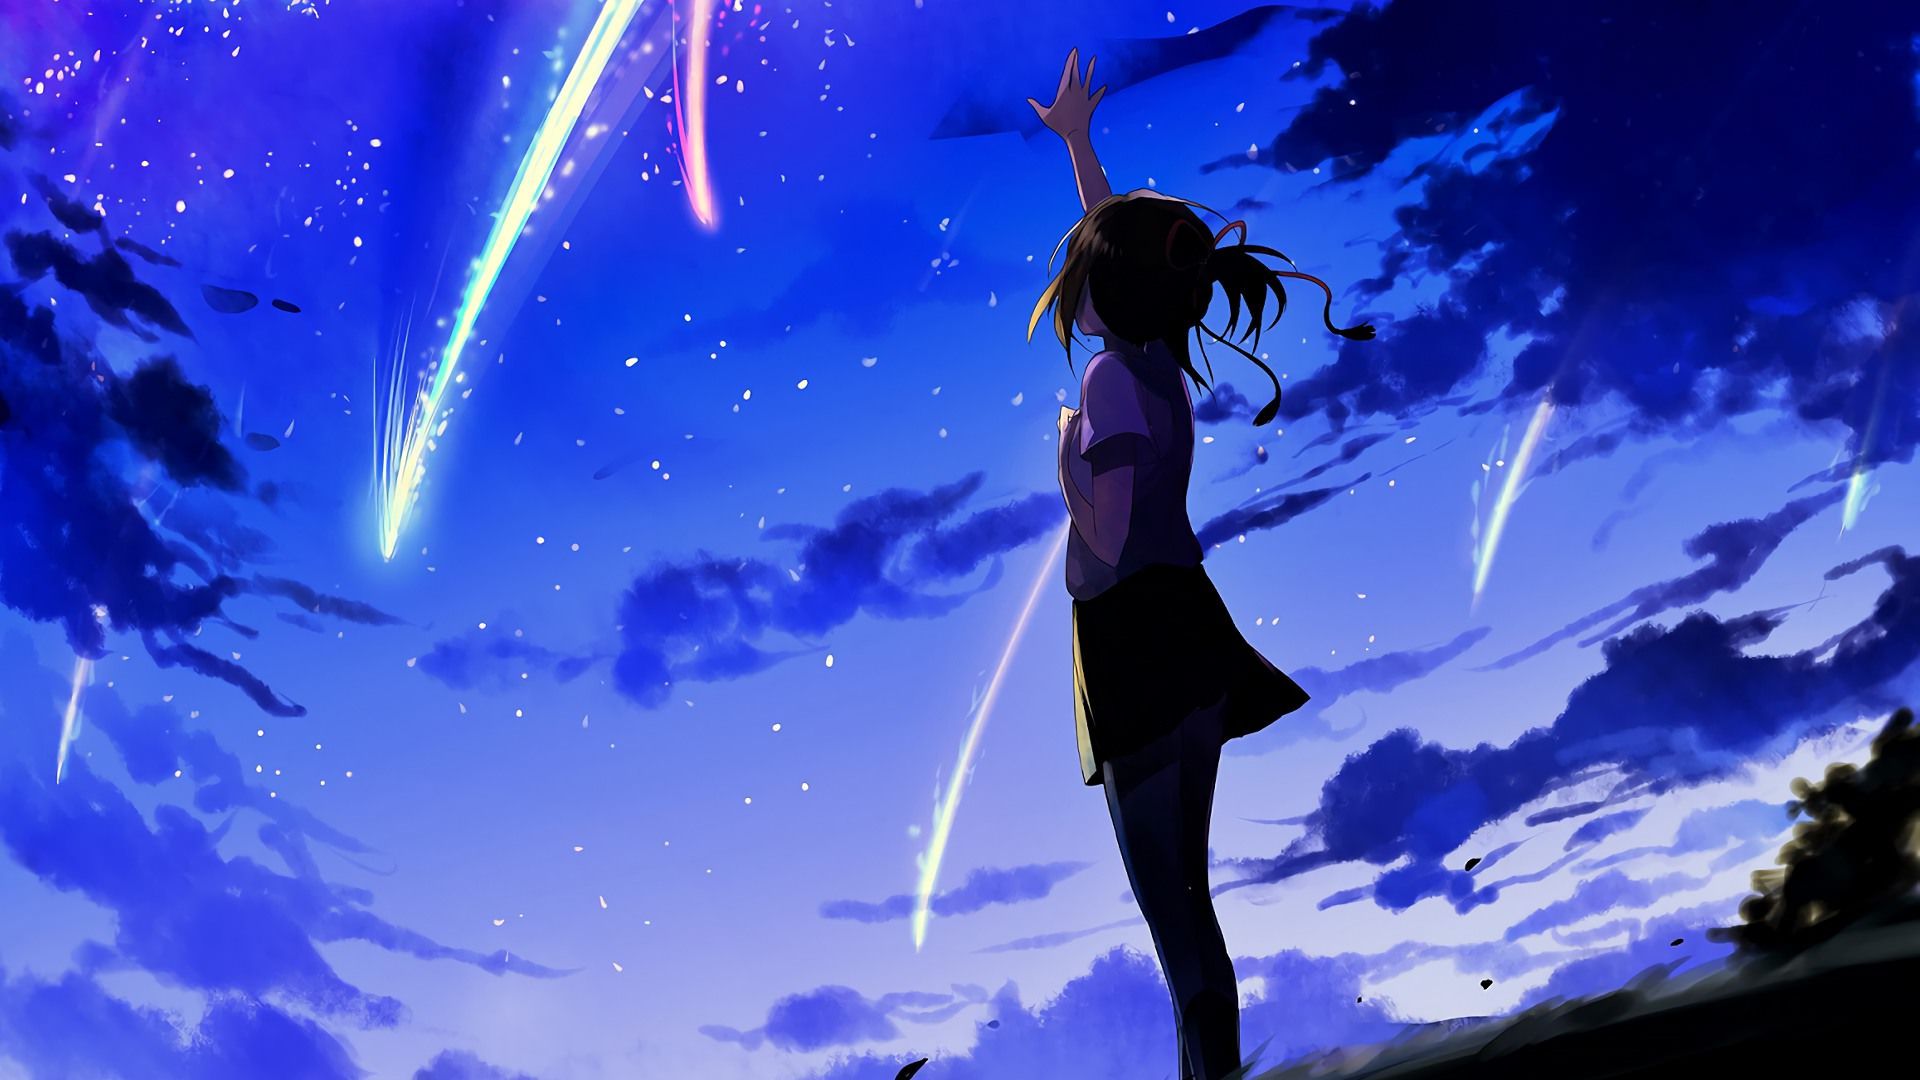 Hãy chiêm ngưỡng hình nền Anime cô gái với hình nền sao lung linh, tạo cảm giác lãng mạn như đang bước vào trên bầu trời đầy ngôi sao rực rỡ. Một tác phẩm nghệ thuật đầy mê hồn mà bạn không nên bỏ qua.